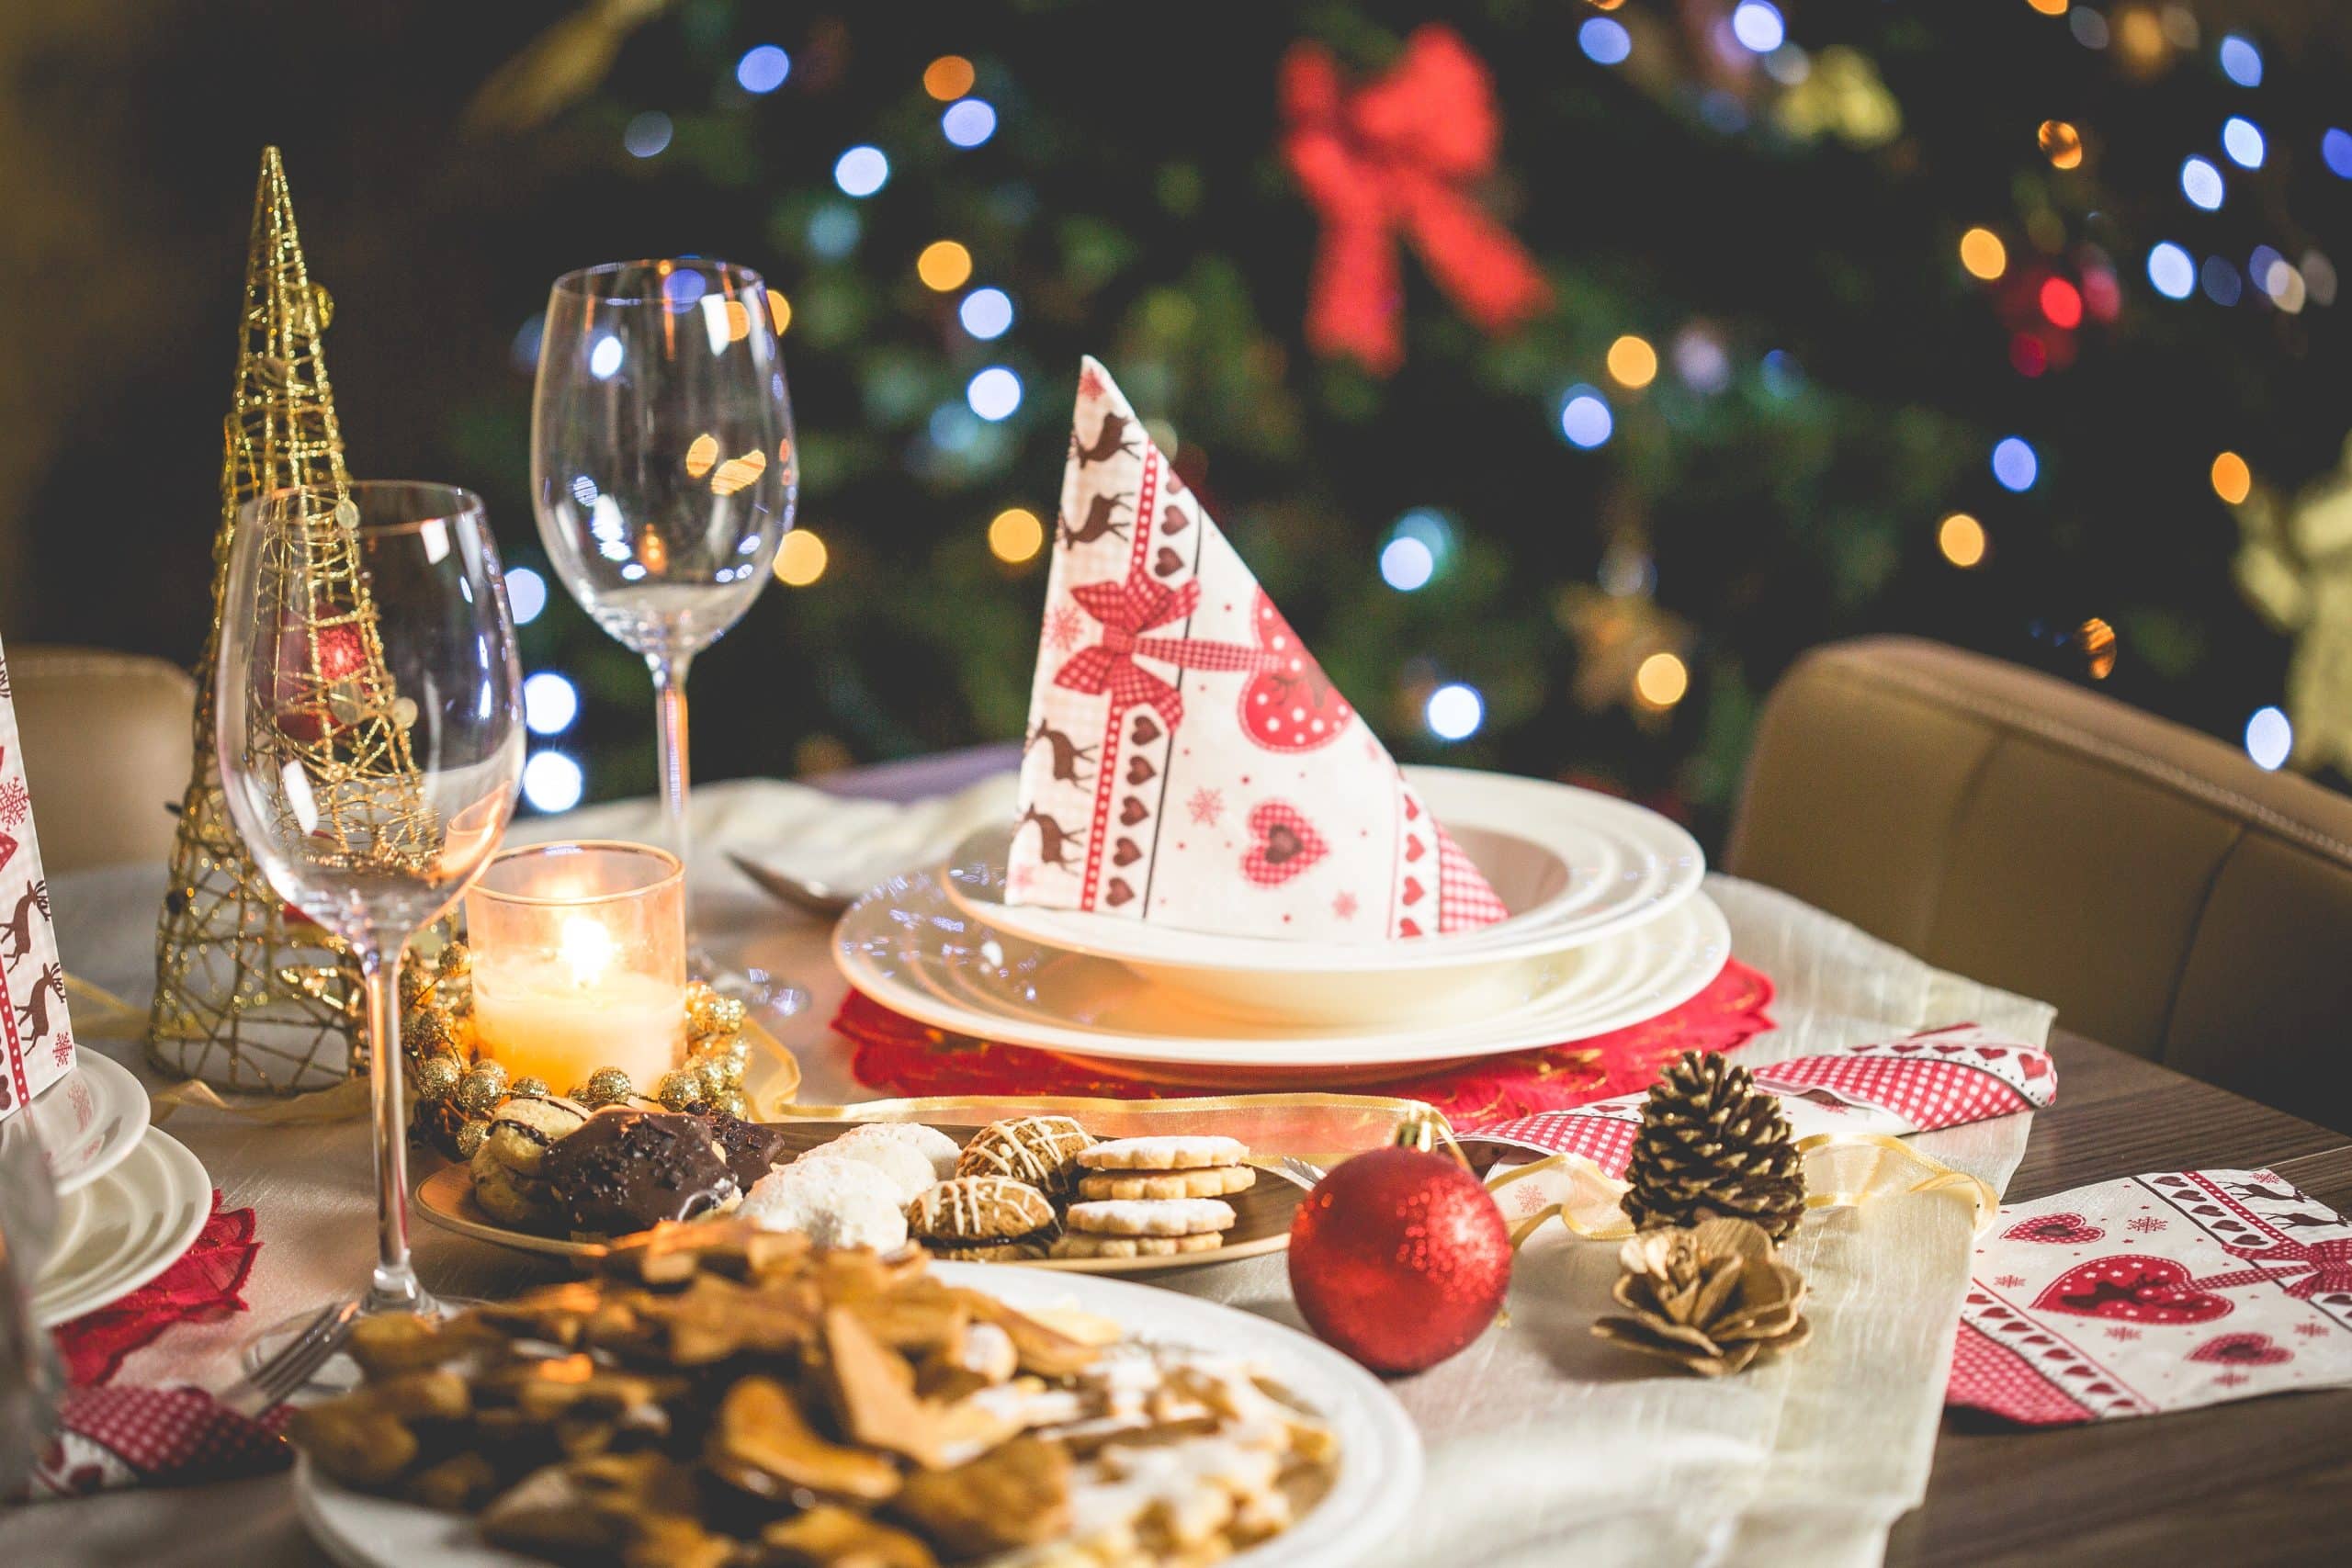 Pranzo di Natale milanese: ecco il menù tradizionale